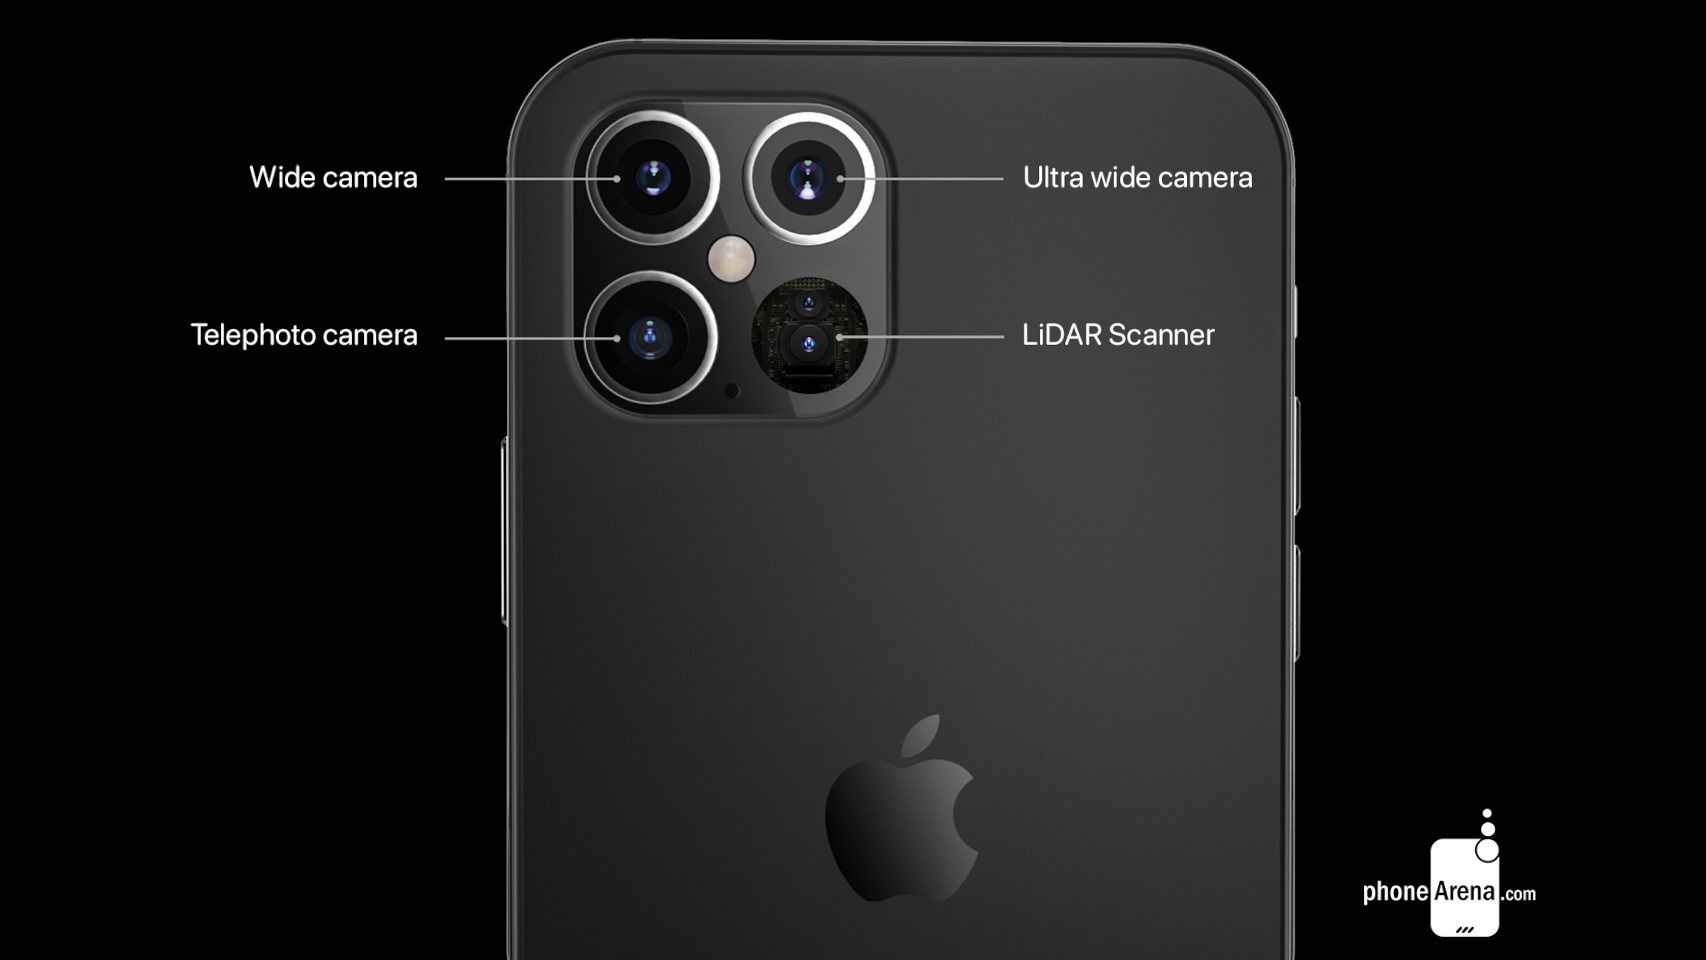 Los nuevos iPhone 12 Pro contarán con LIDAR